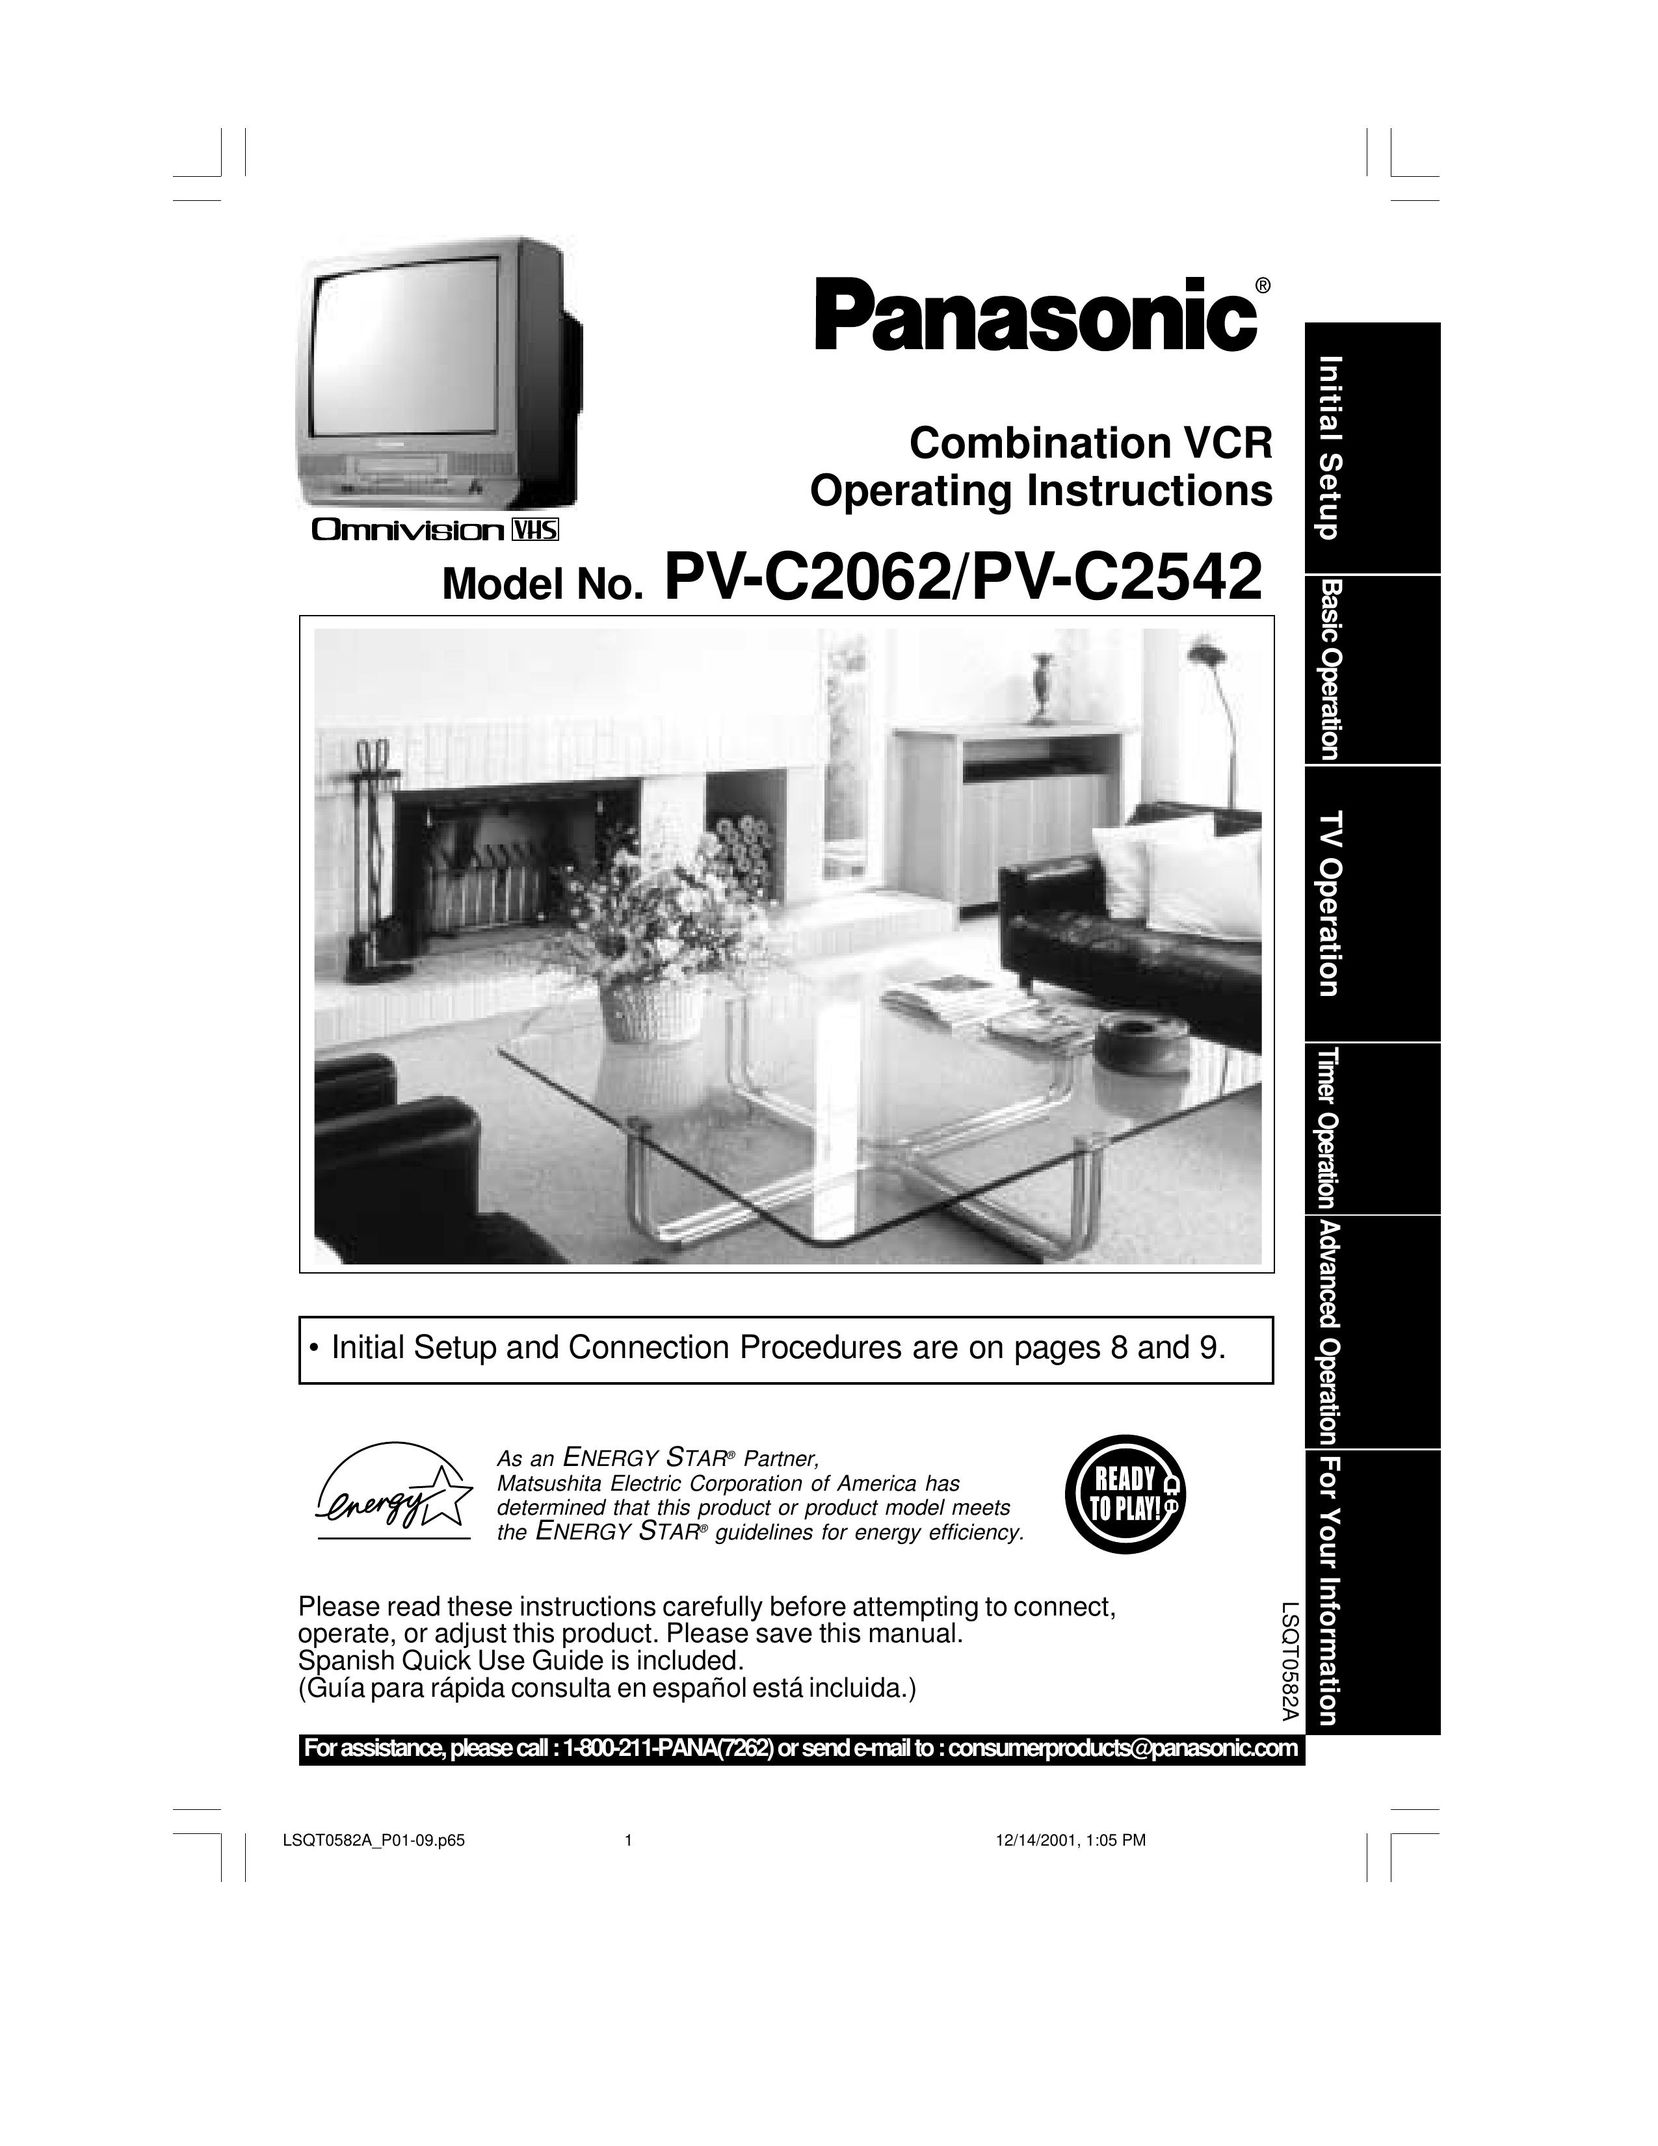 Panasonic PV C2542 TV VCR Combo User Manual